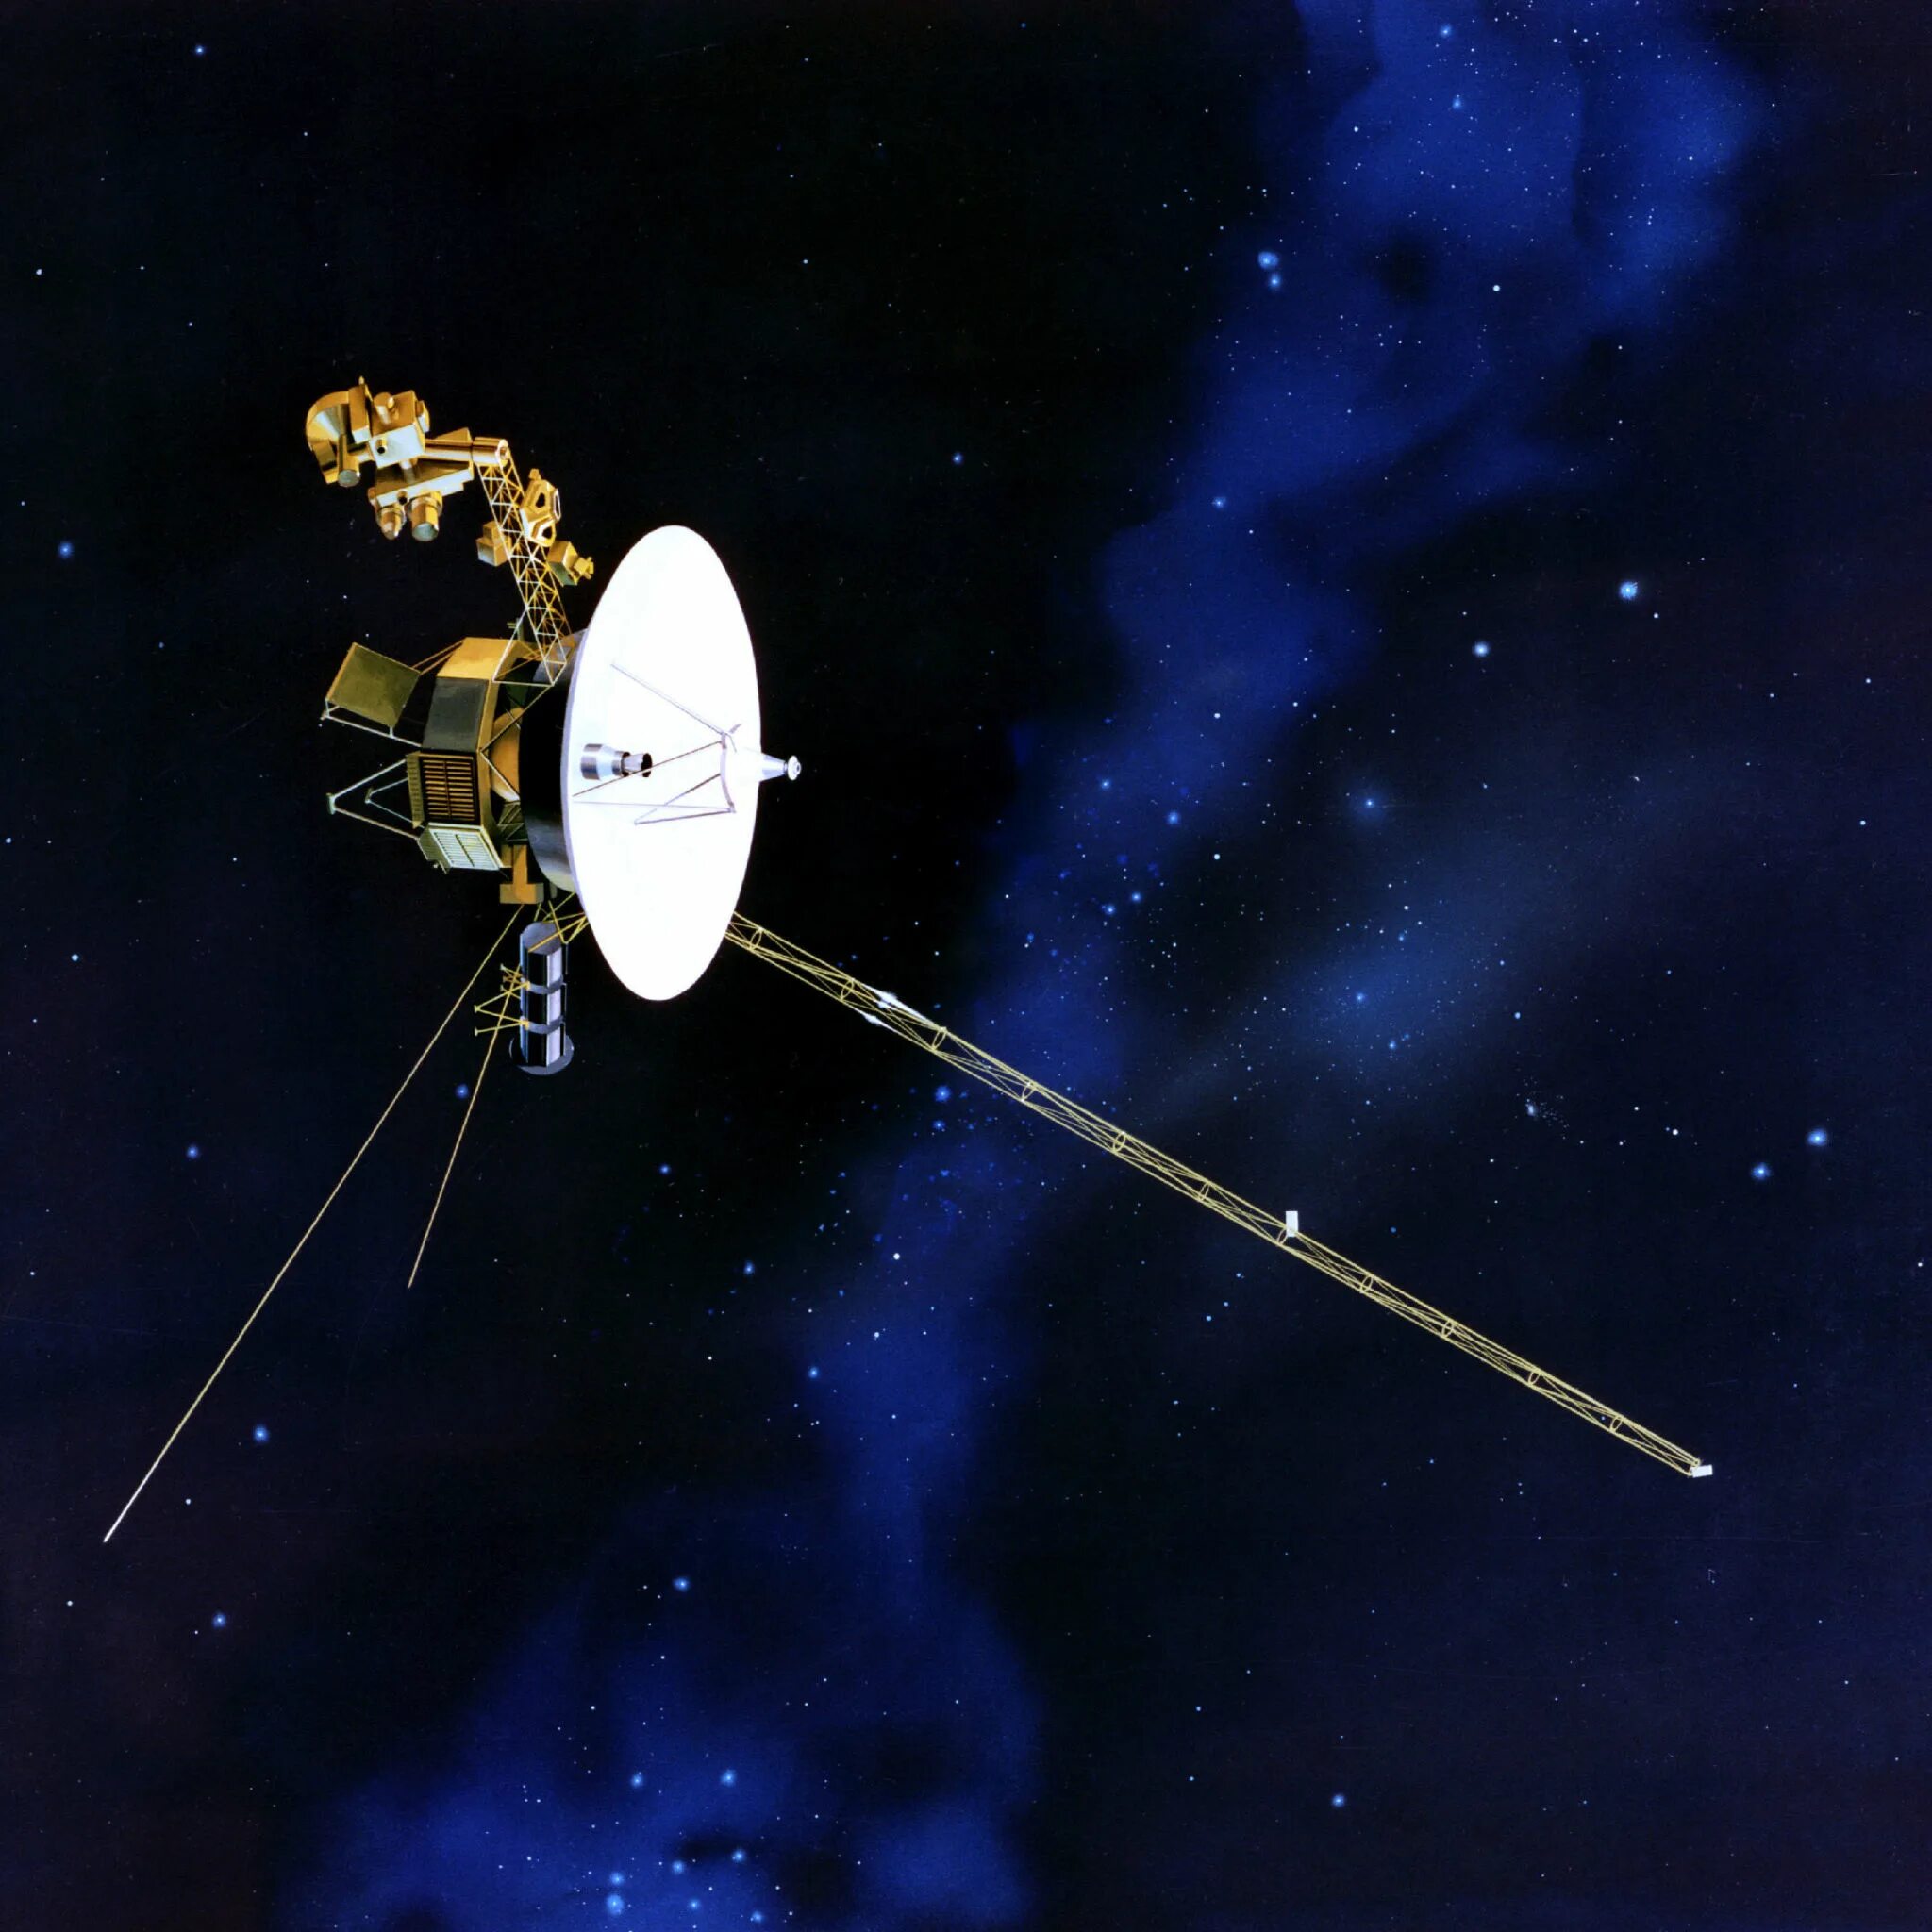 Первые космические зонды. Космический аппарат Вояджер-1. Вояджер-2 космический аппарат. Вояджер-2 автоматическая межпланетная станция. Спутники Вояджер 1 и 2.